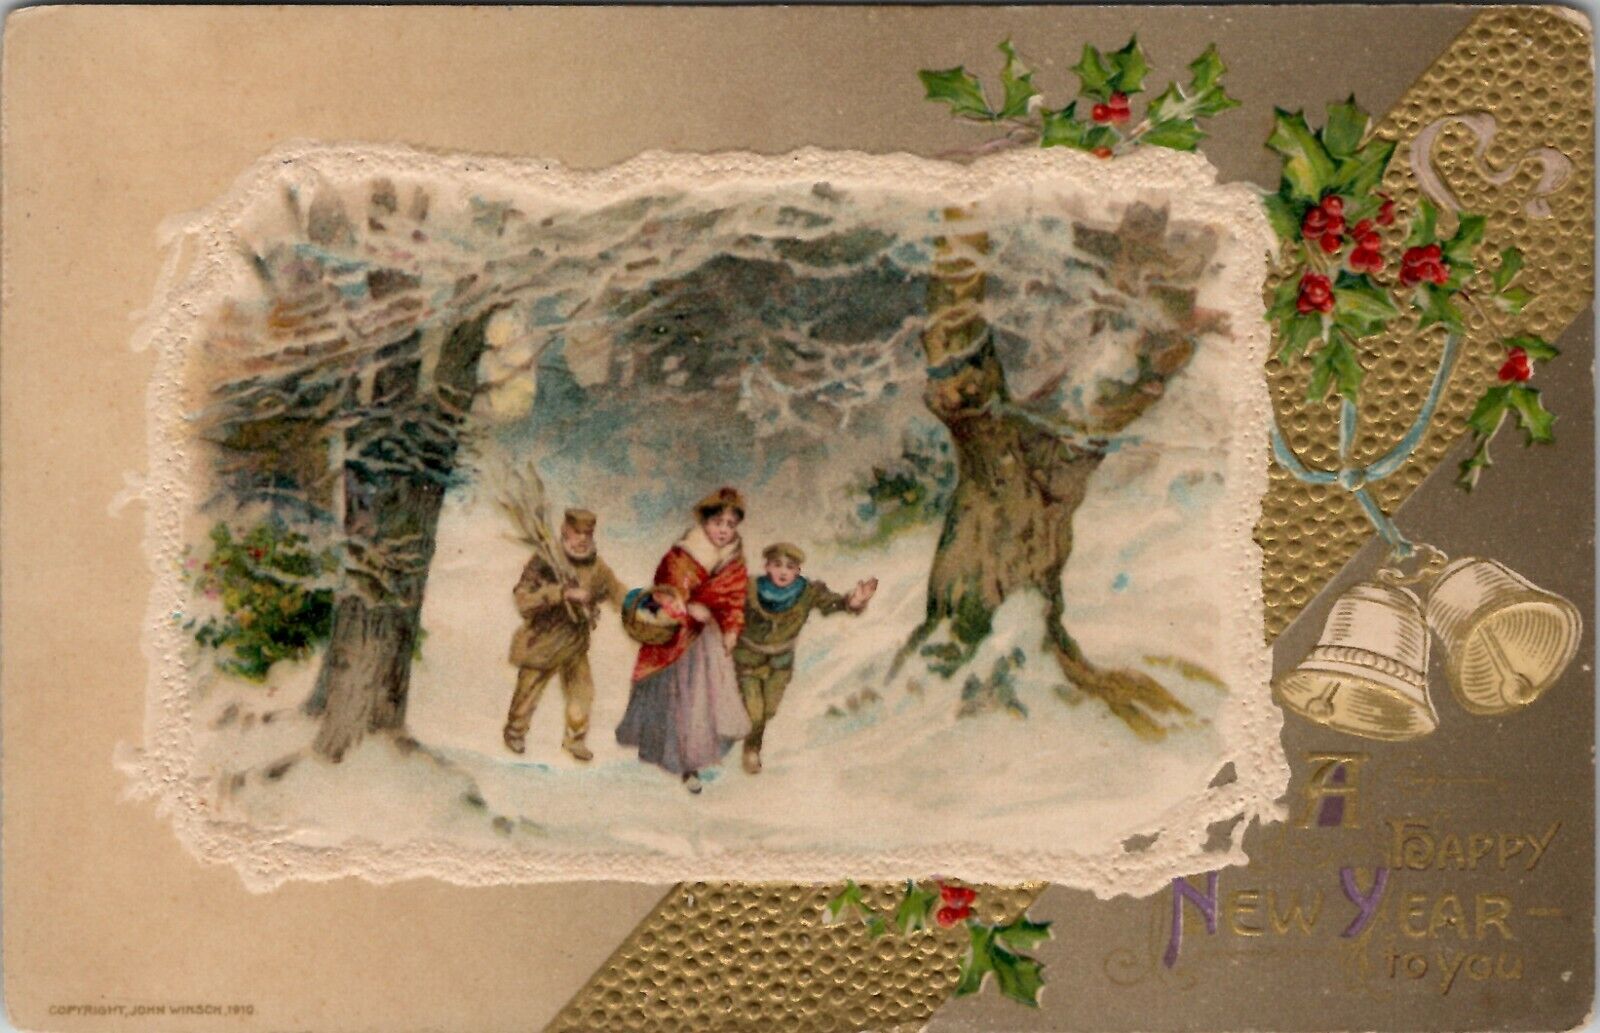 New Years John Winsch Family Snow Flock Night Scene 1912 Embossed Postcard V4